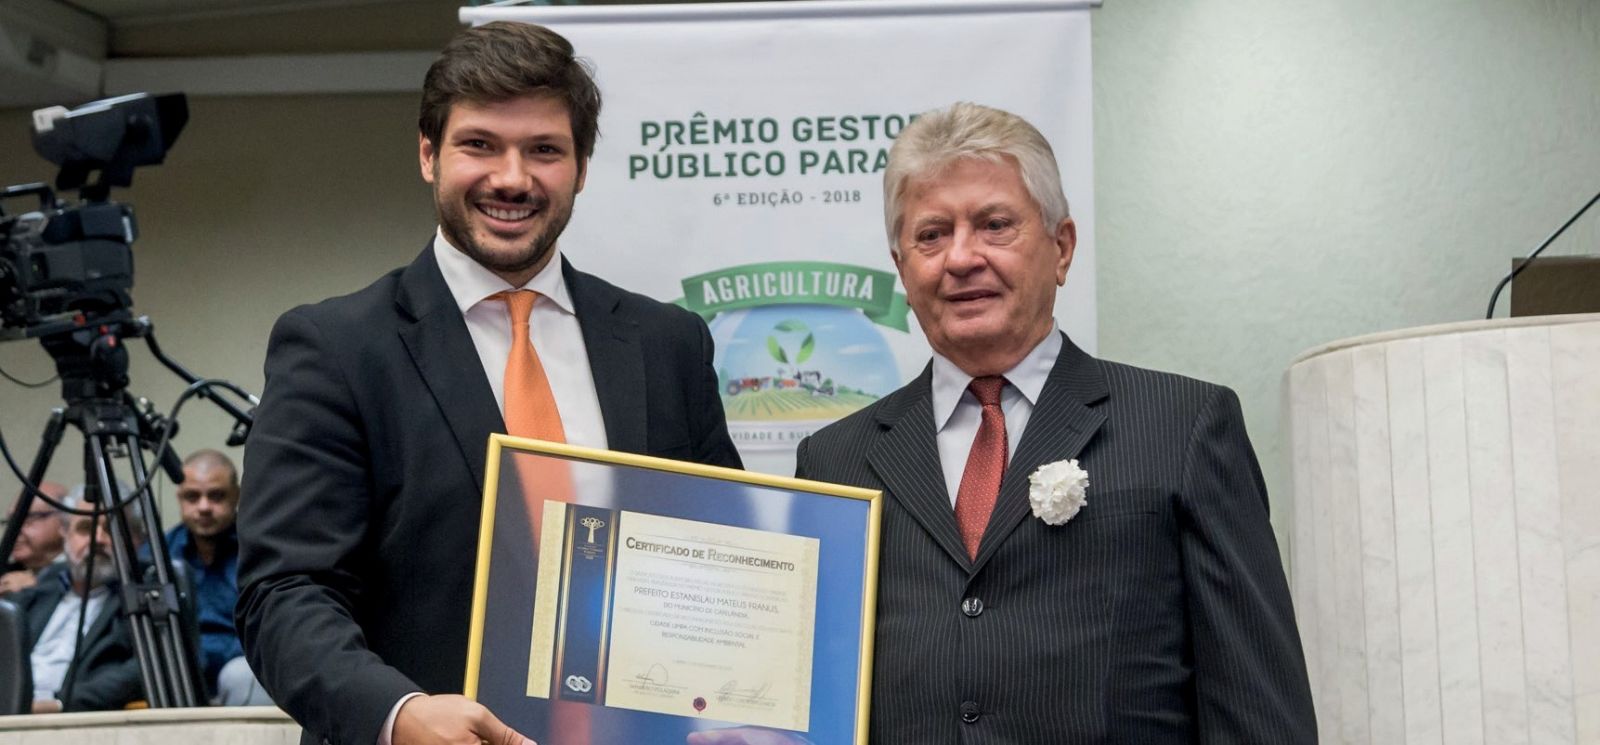 Prefeito de Cafelândia, Estanislau Mateus Franus, recebe o Certificado de Reconhecimento pelo Cidade Limpa